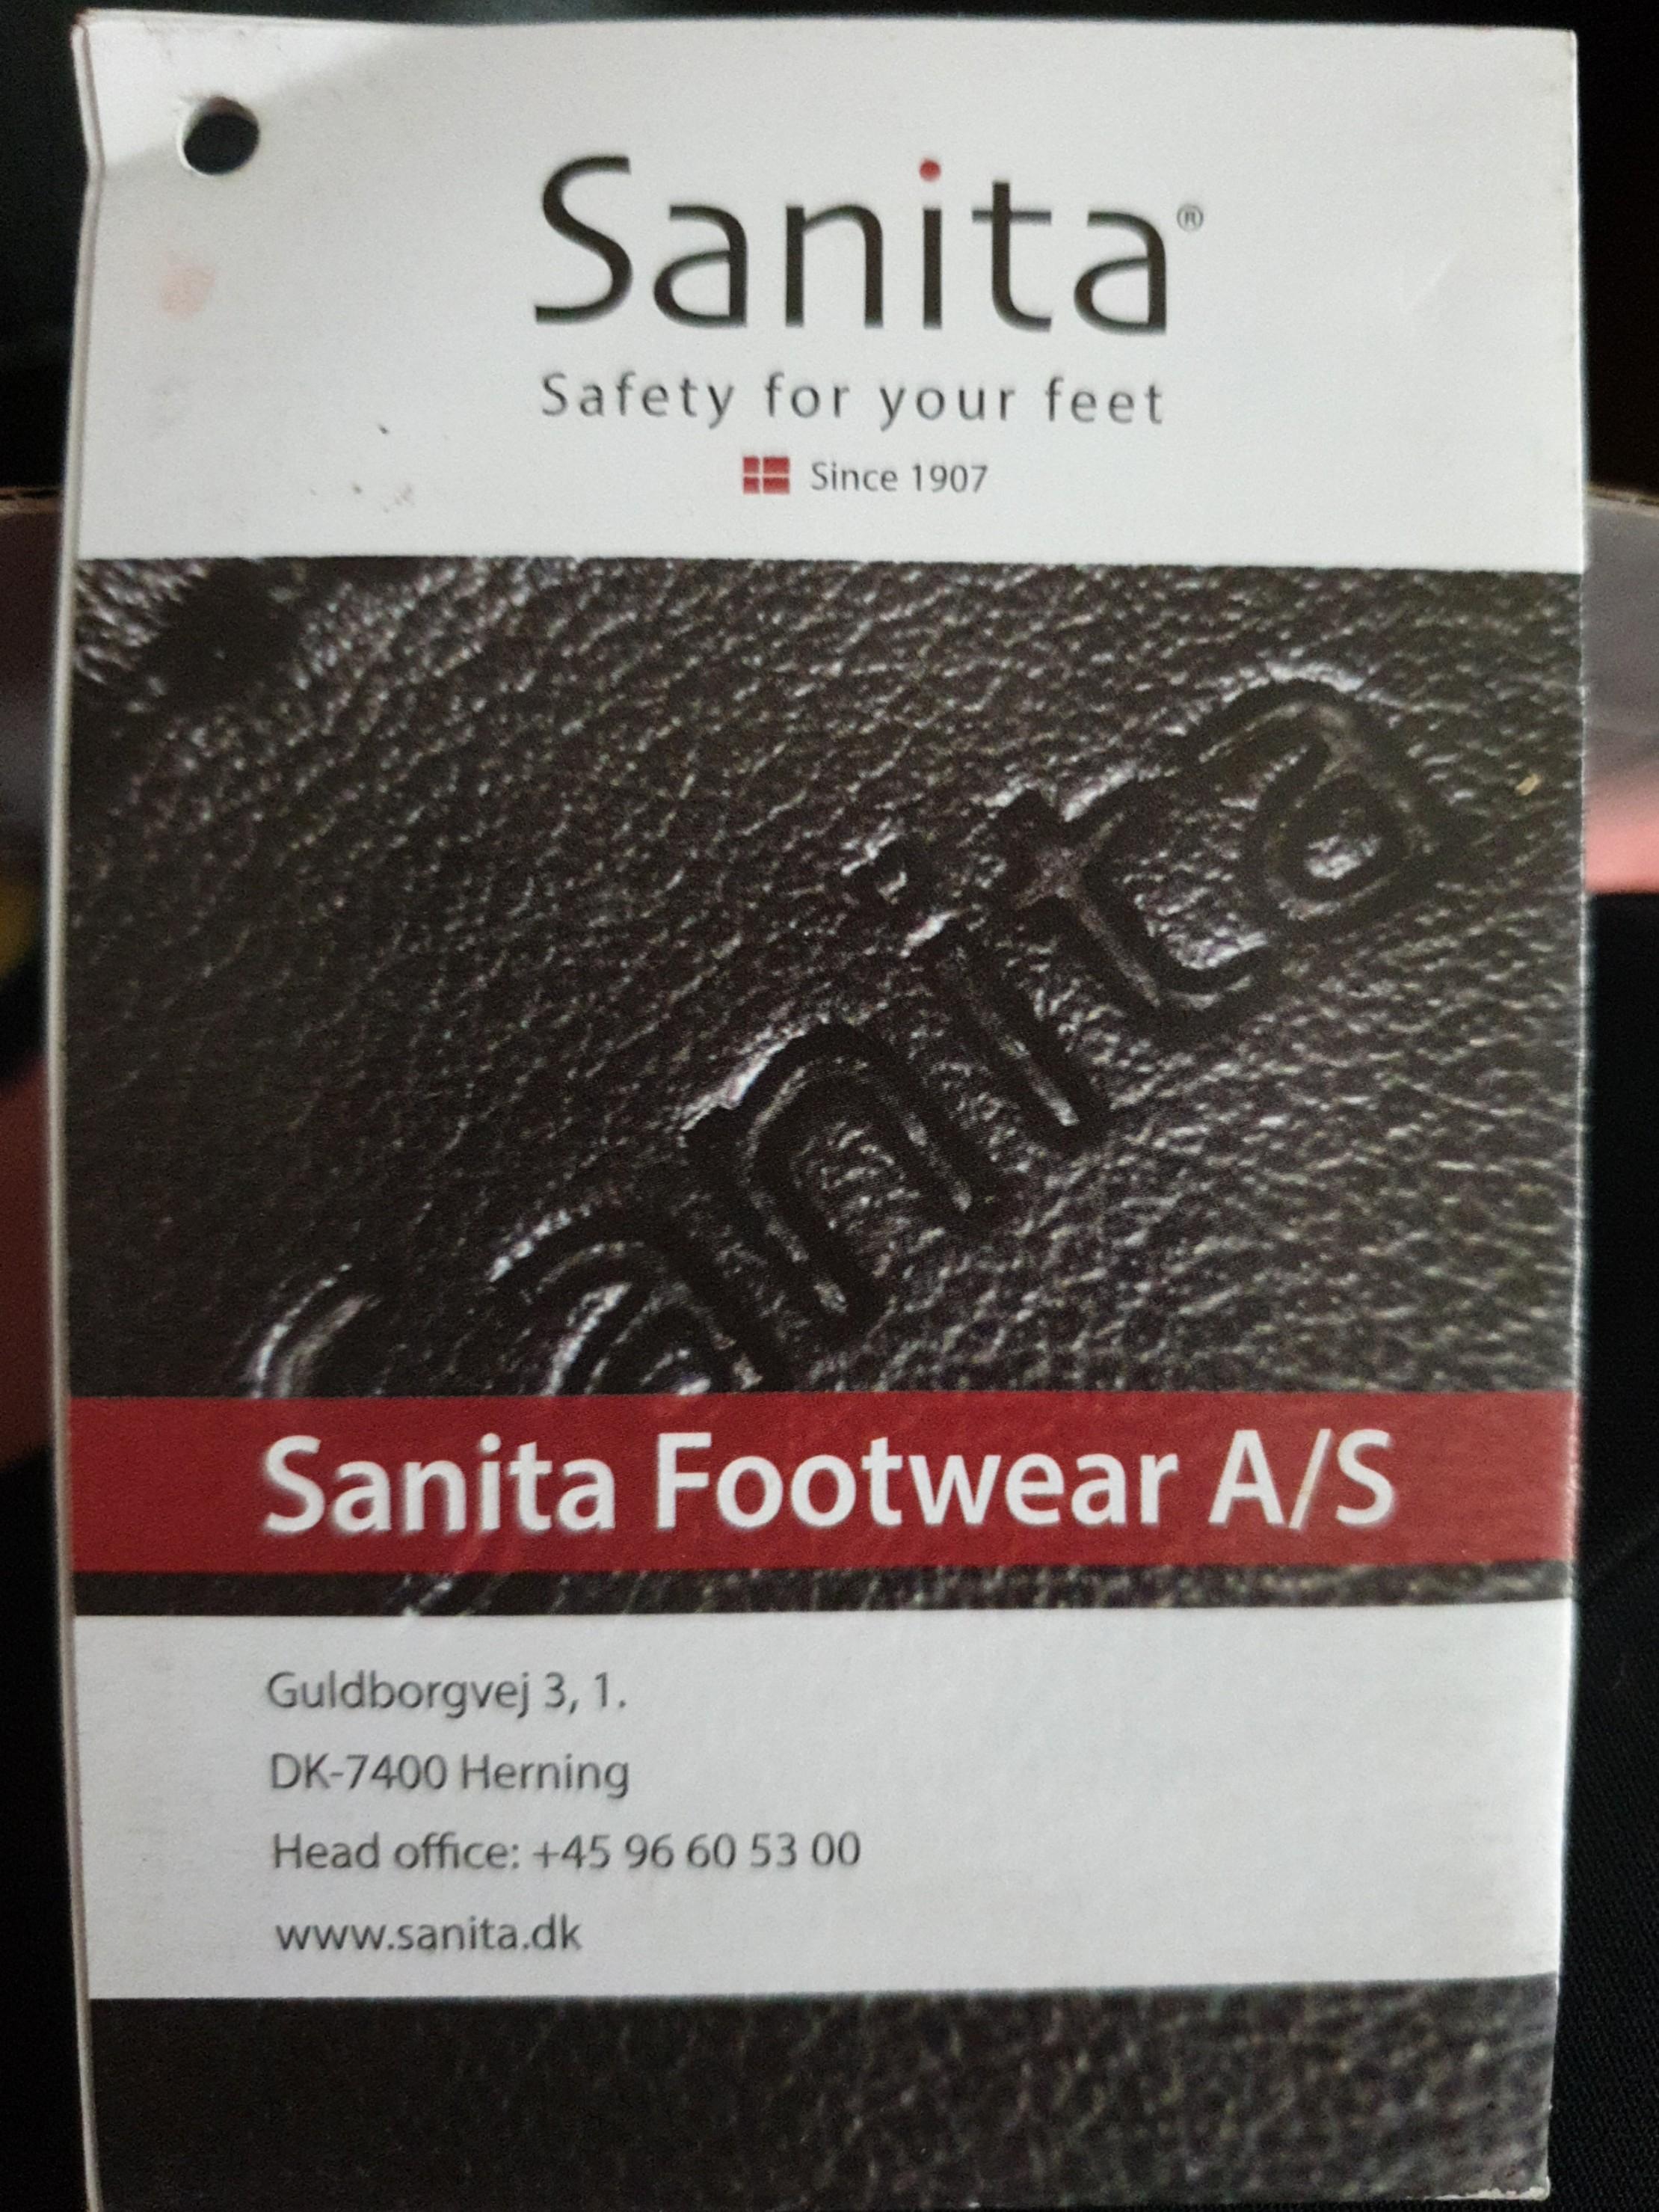 sanita safety shoes